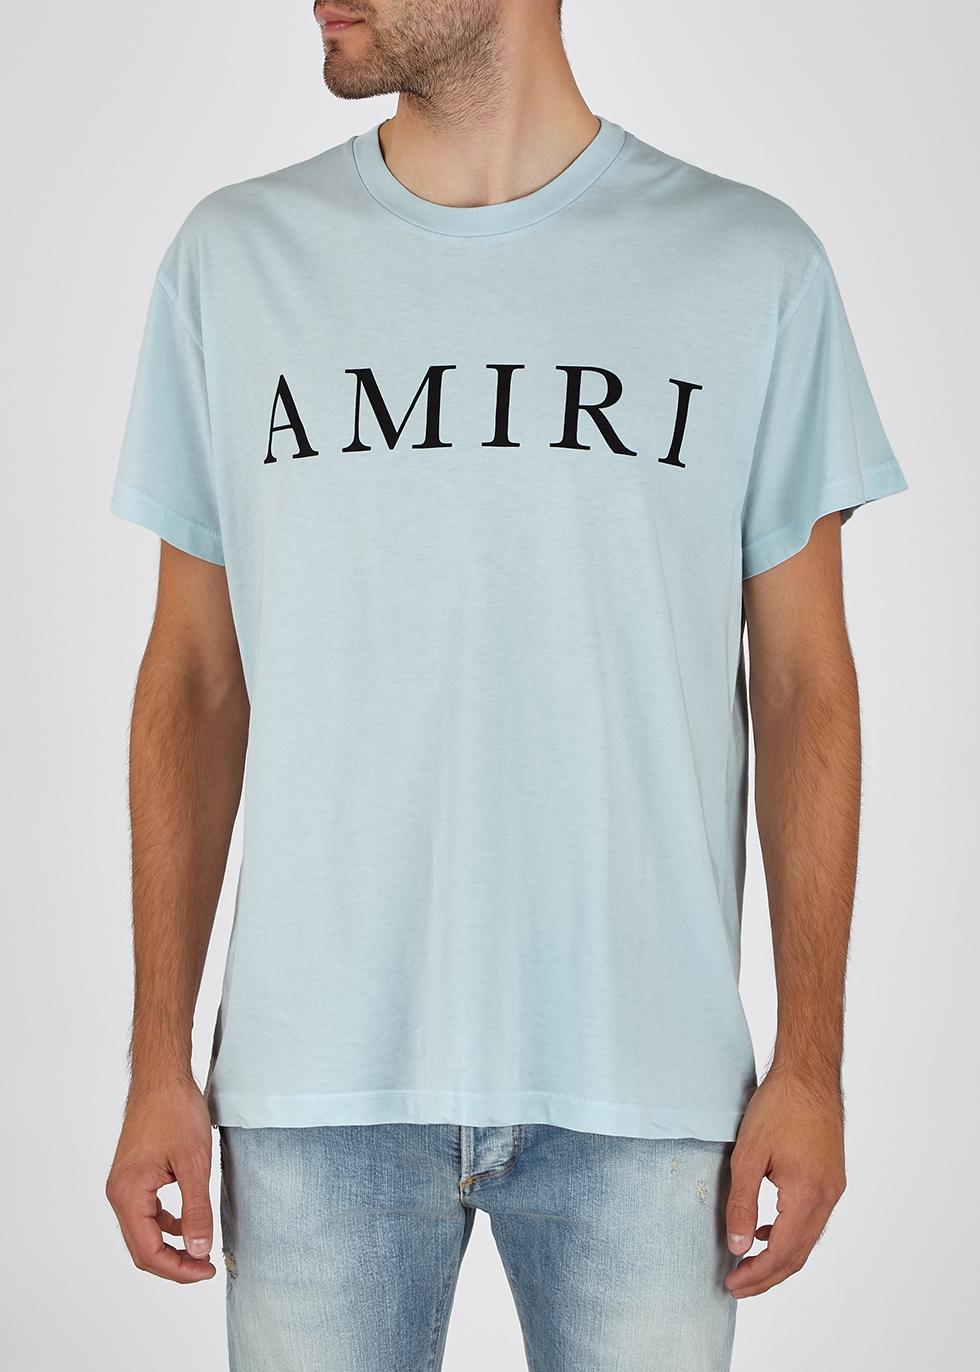 Amiri Logo T-shirt in Blue for Men